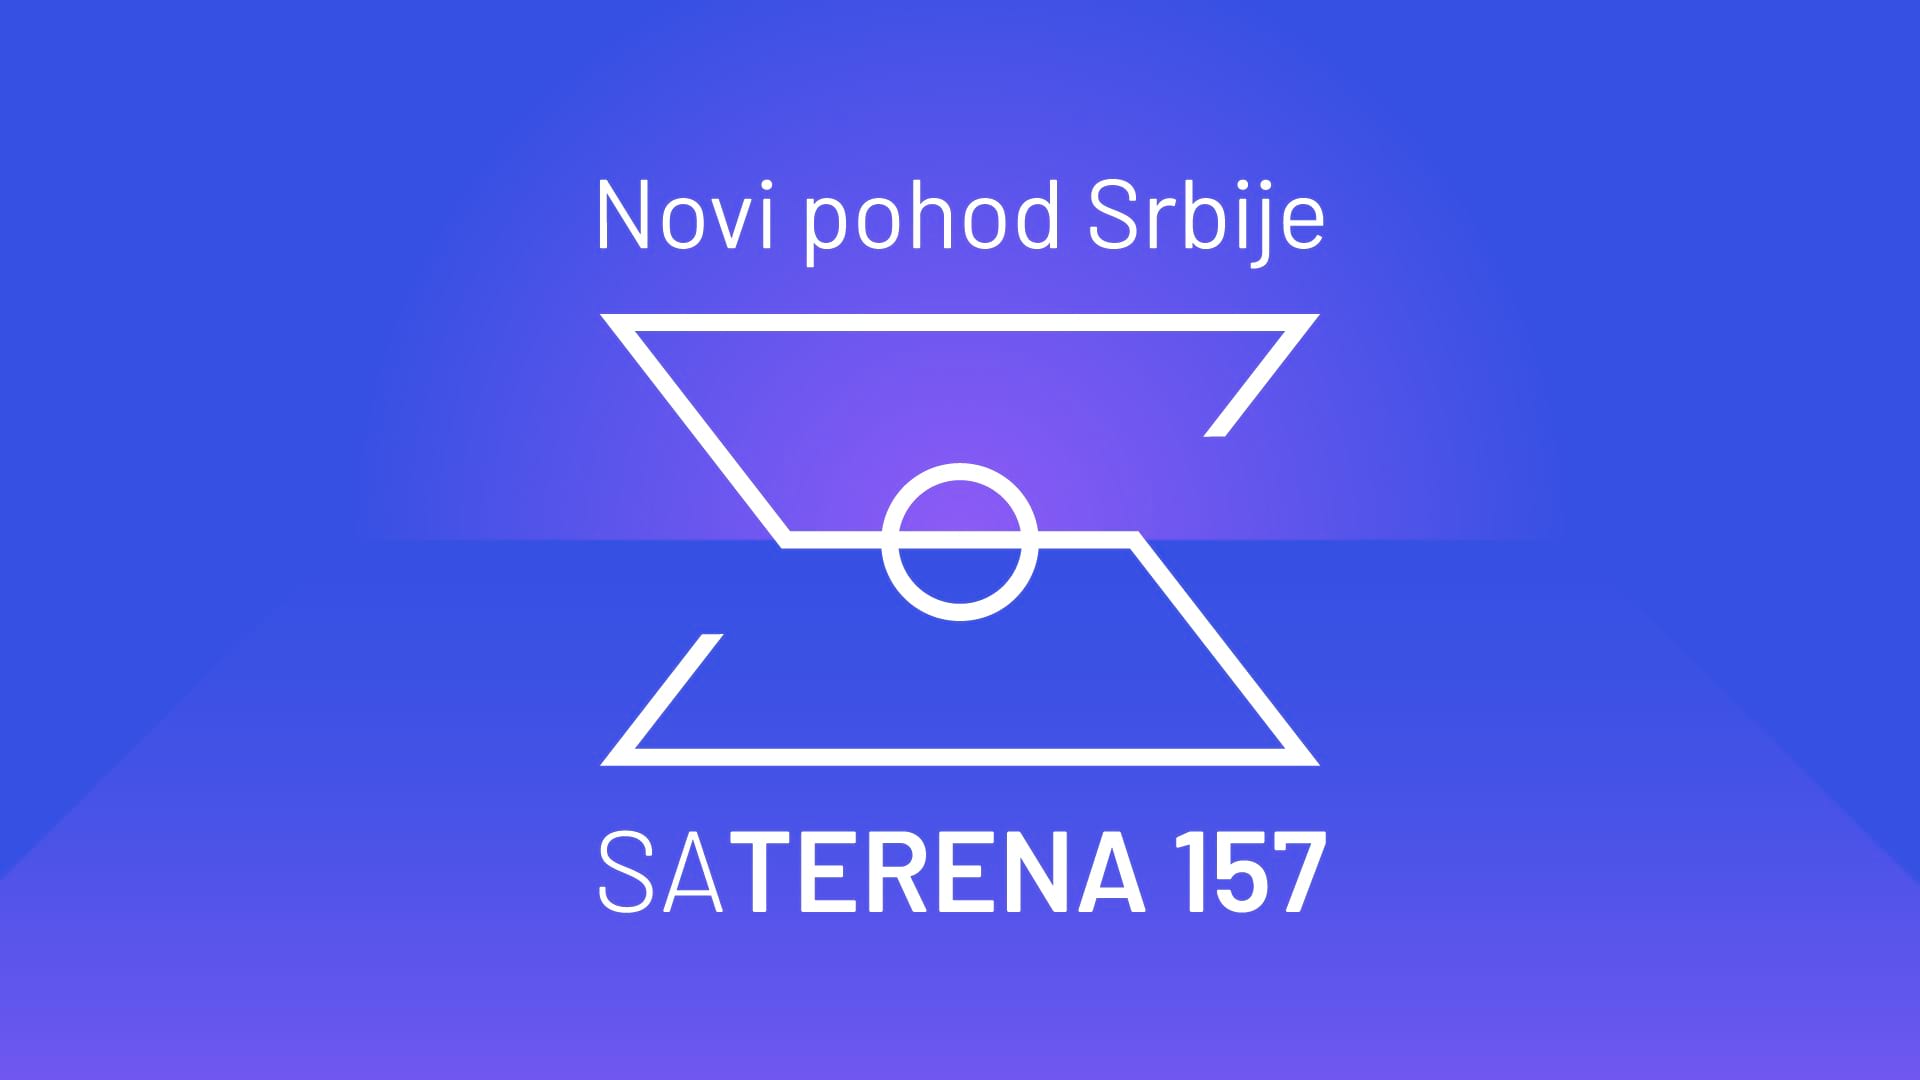 Sa terena 157: Novi pohod Srbije